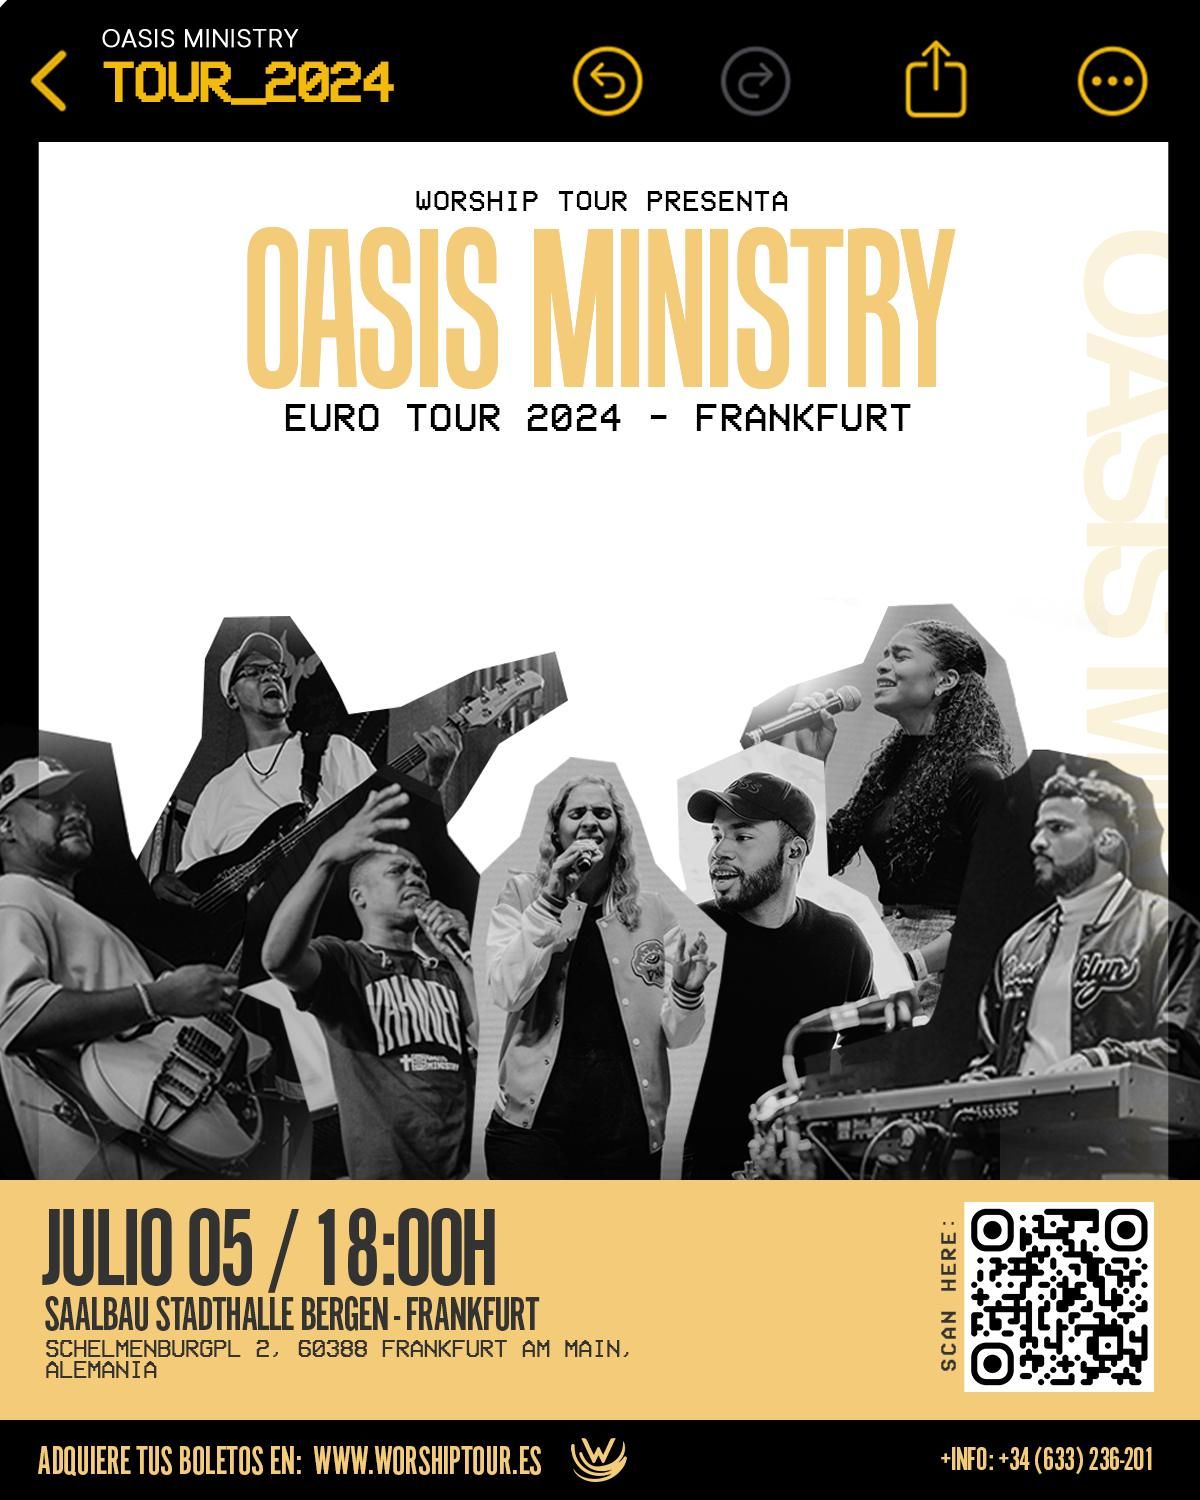 Frankfurt, Alemania - OASIS MINISTRY EURO TOUR 2024